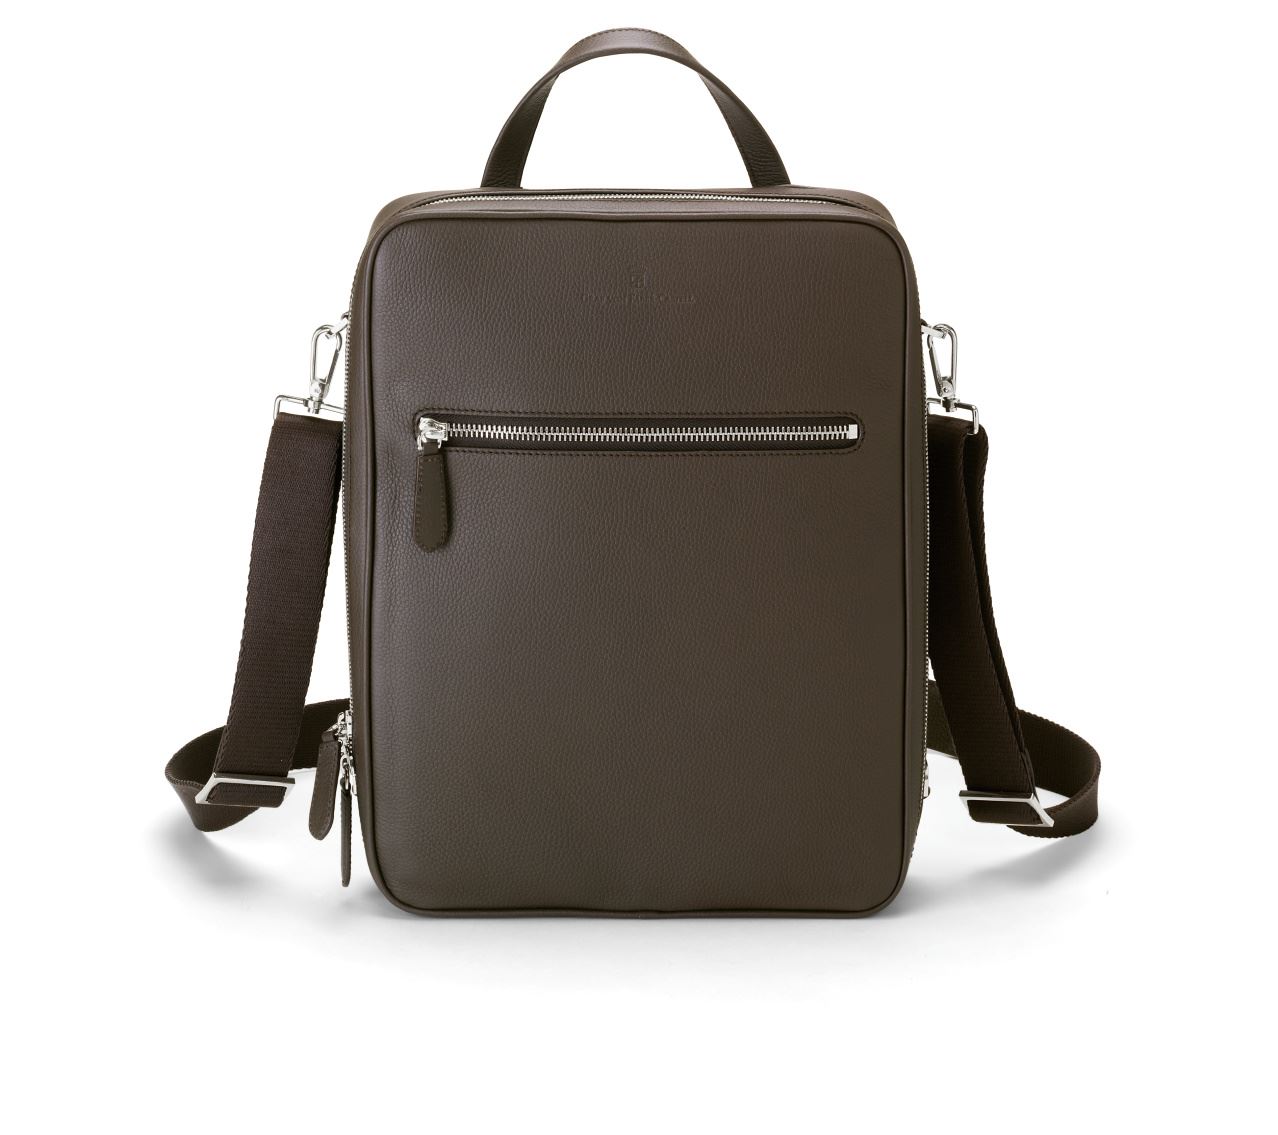 Graf-von-Faber-Castell - Backpack Cashmere, Dark Brown